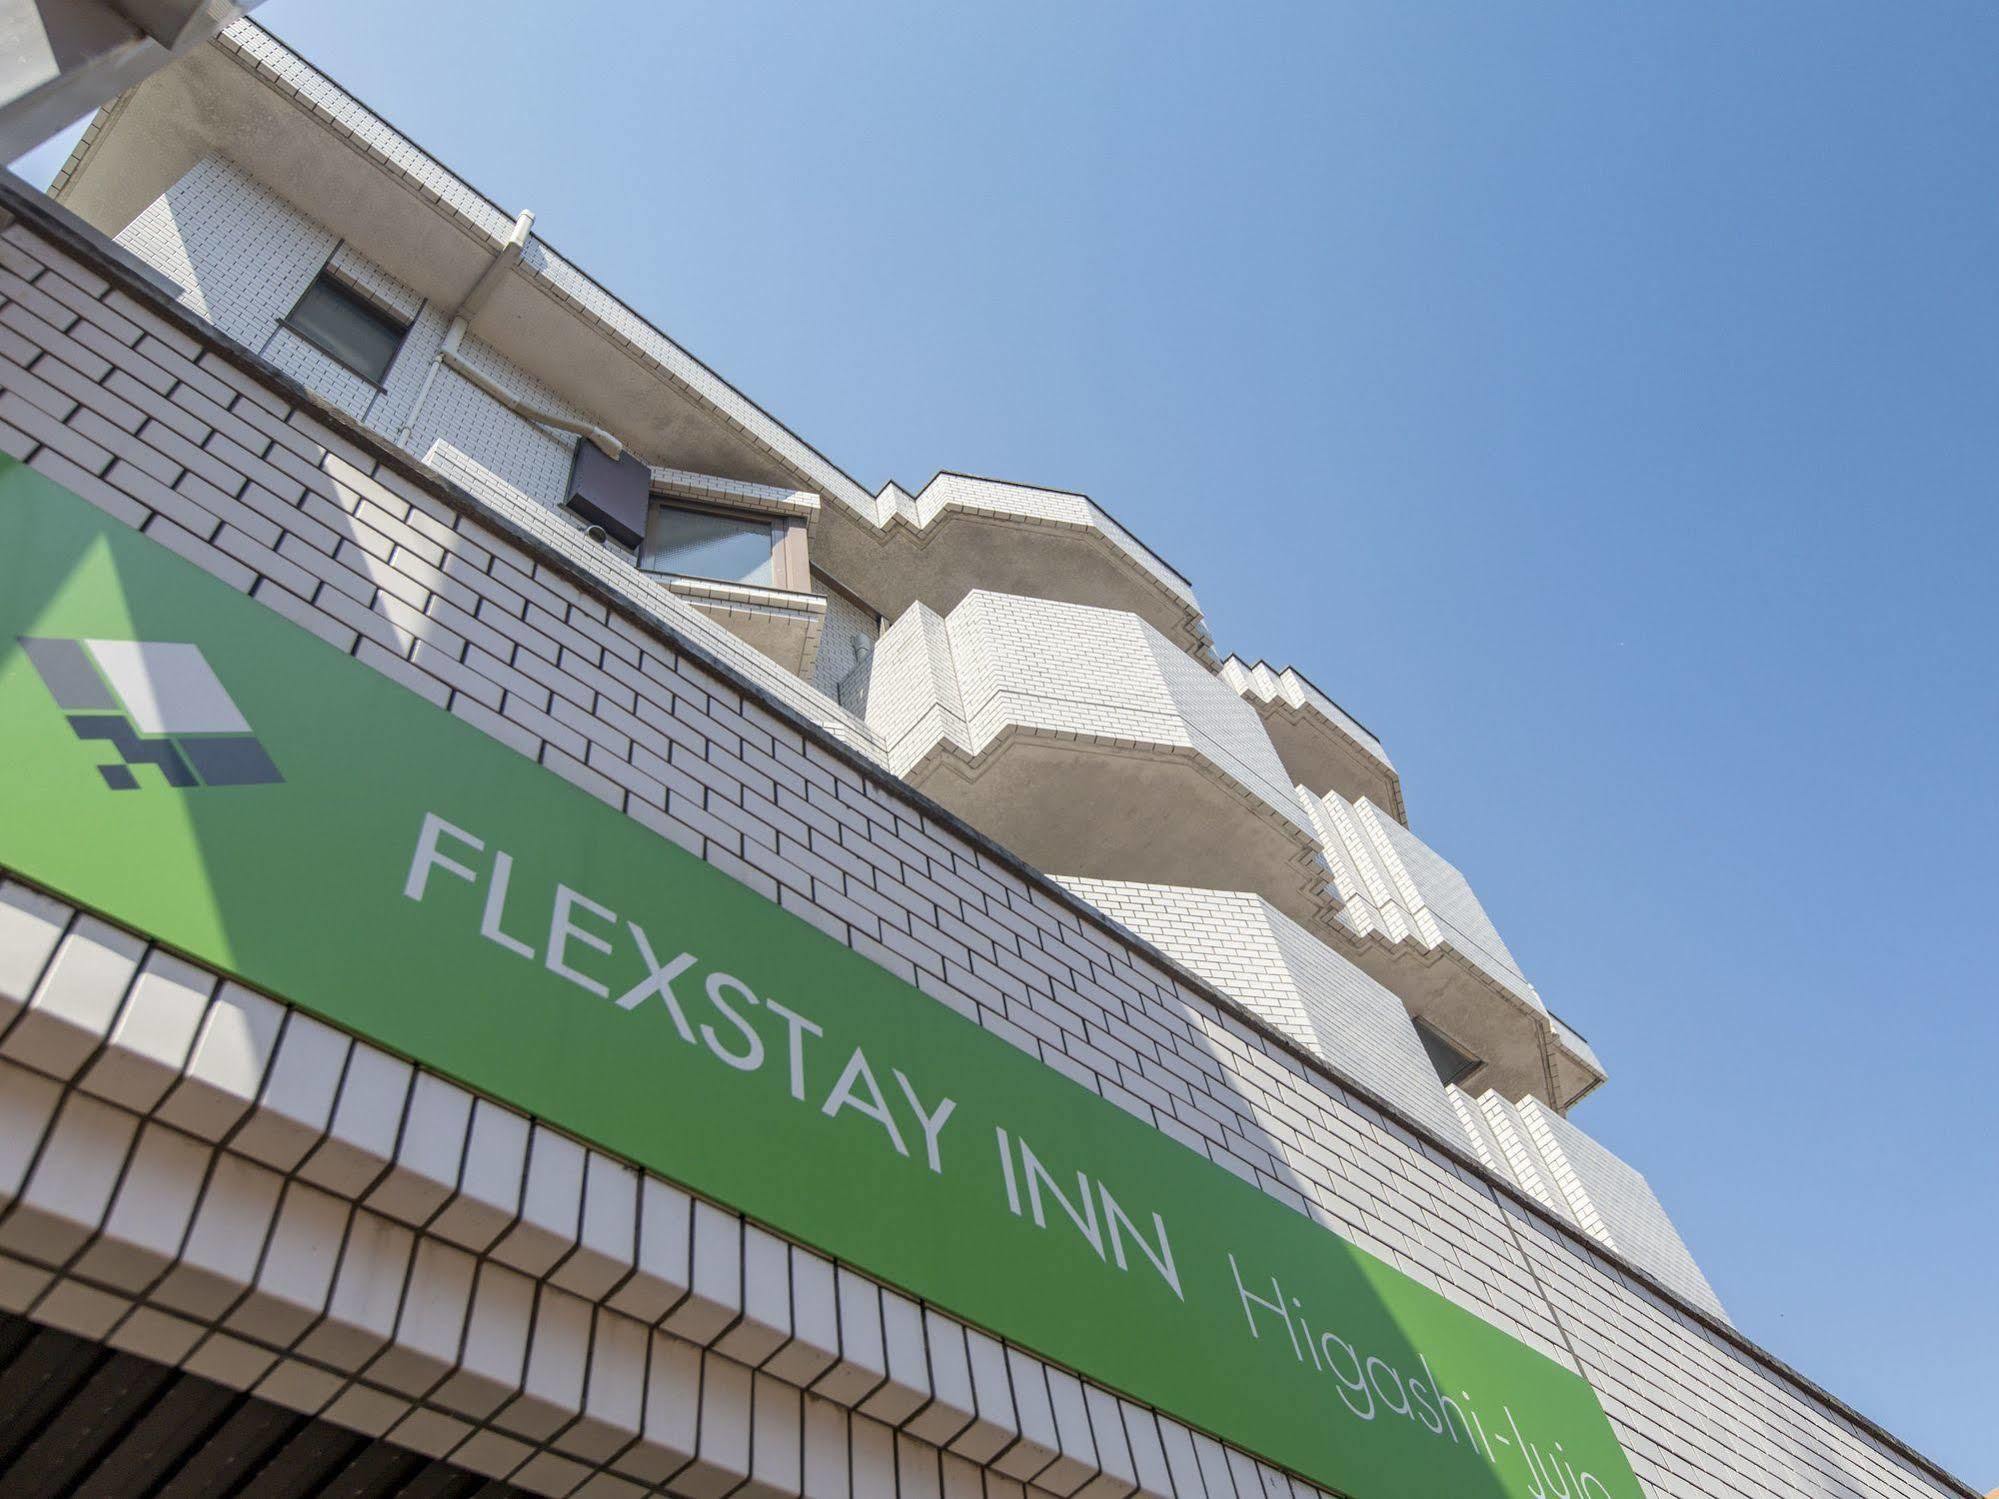 Flexstay Inn Higashi Jujo Tokyo Bagian luar foto